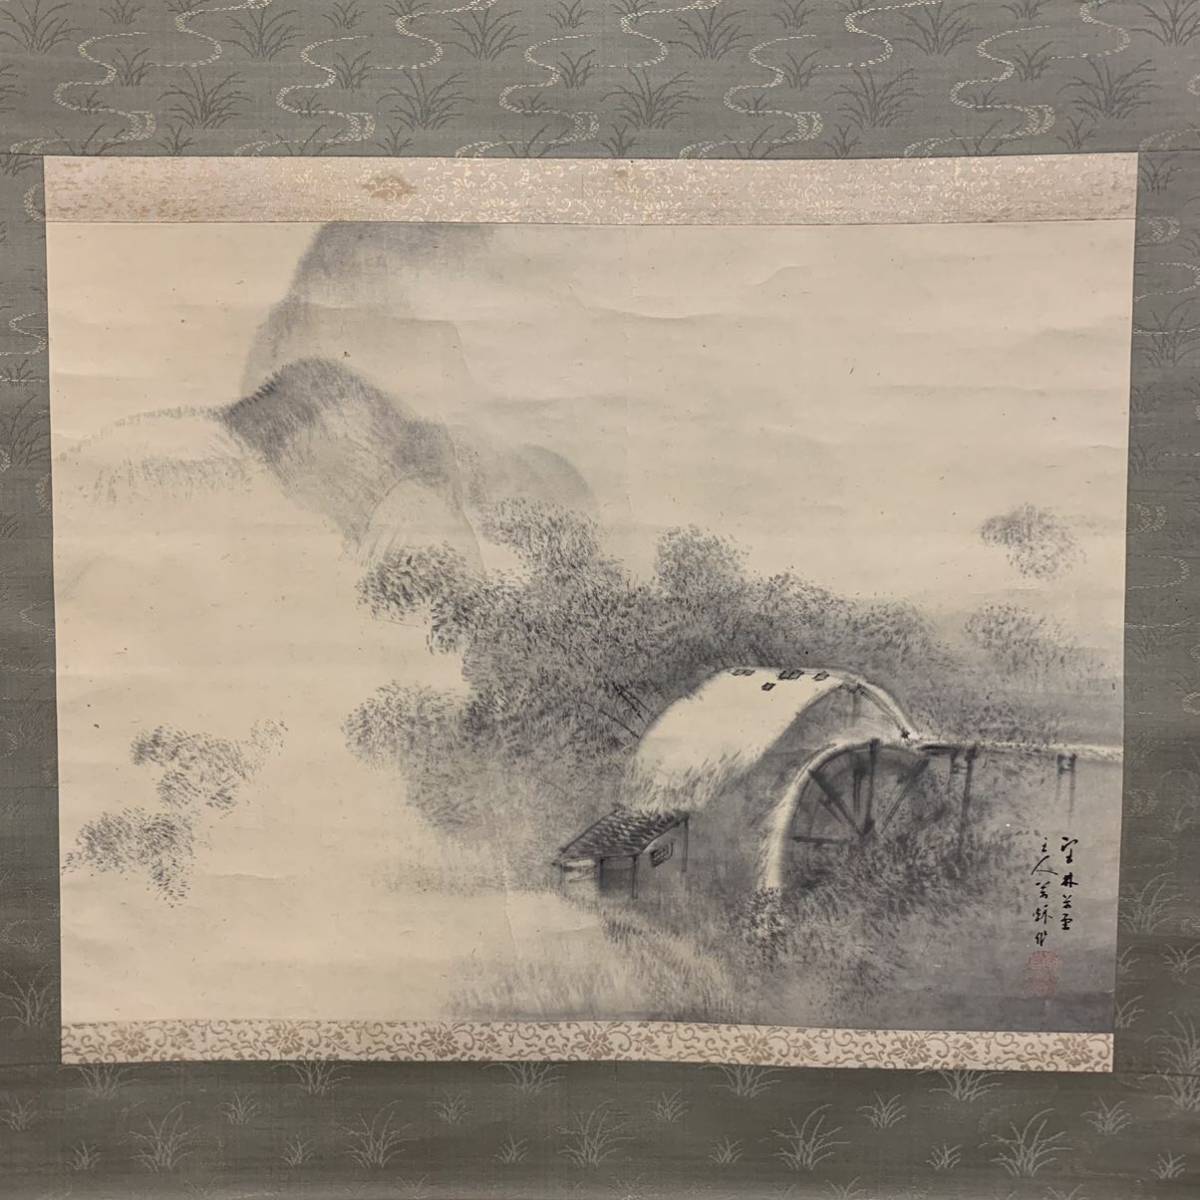 [نسخة] (Kade 36) لوحة حبر Manshu Ueda Sankei لوحة يابانية نفس الصندوق تقريبًا. 142 × 67 سم, تلوين, اللوحة اليابانية, منظر جمالي, فوجيتسو